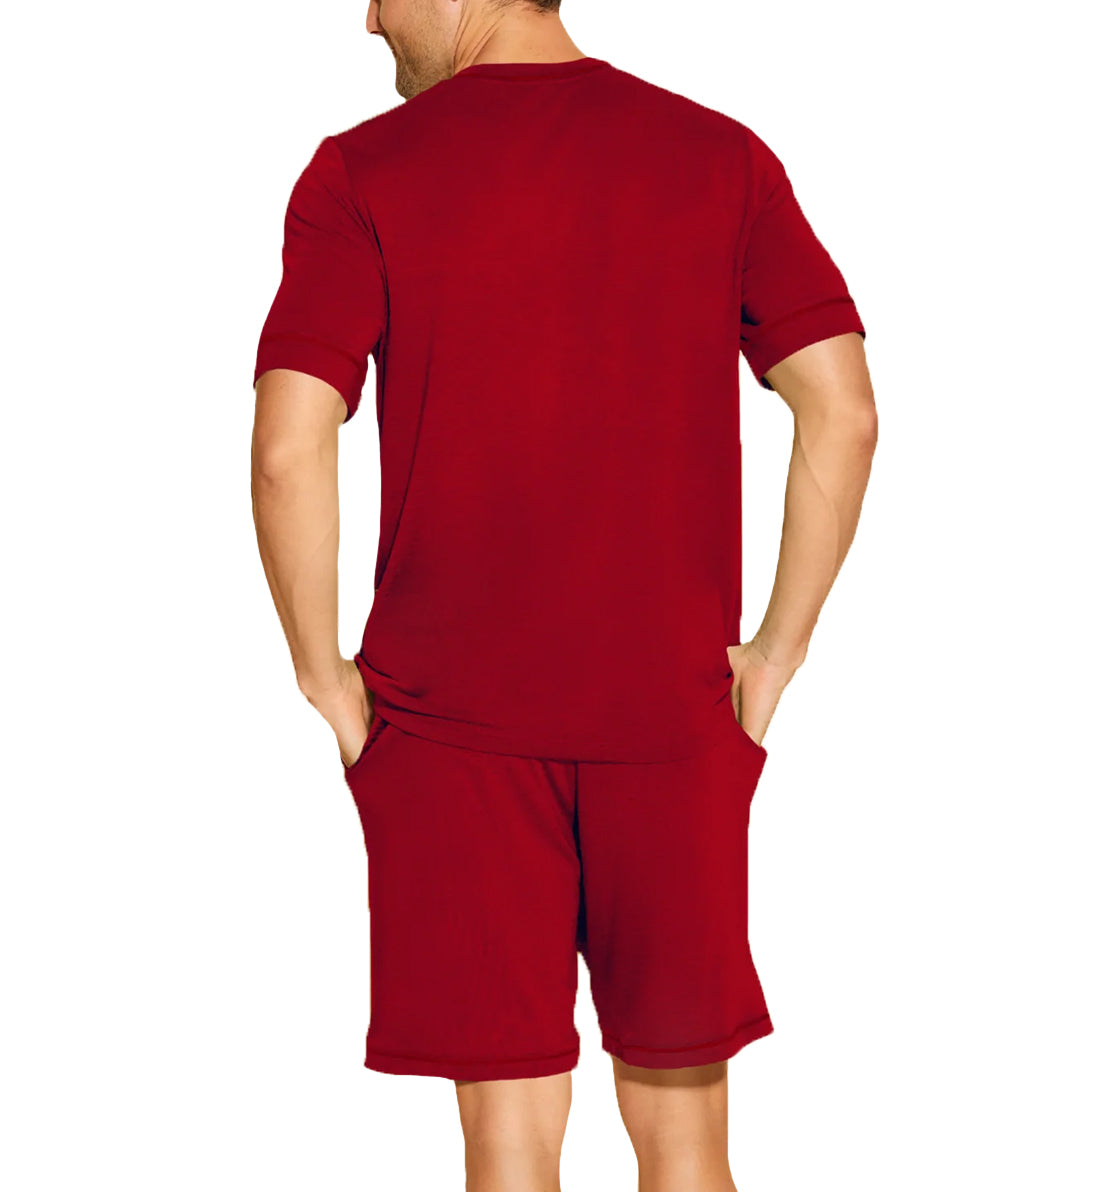 Cosabella Men's Short Sleeve V-Neck Shirt & Short PJ Set (AMORE9421),S,Sindoor Red - Sindoor Red,Small